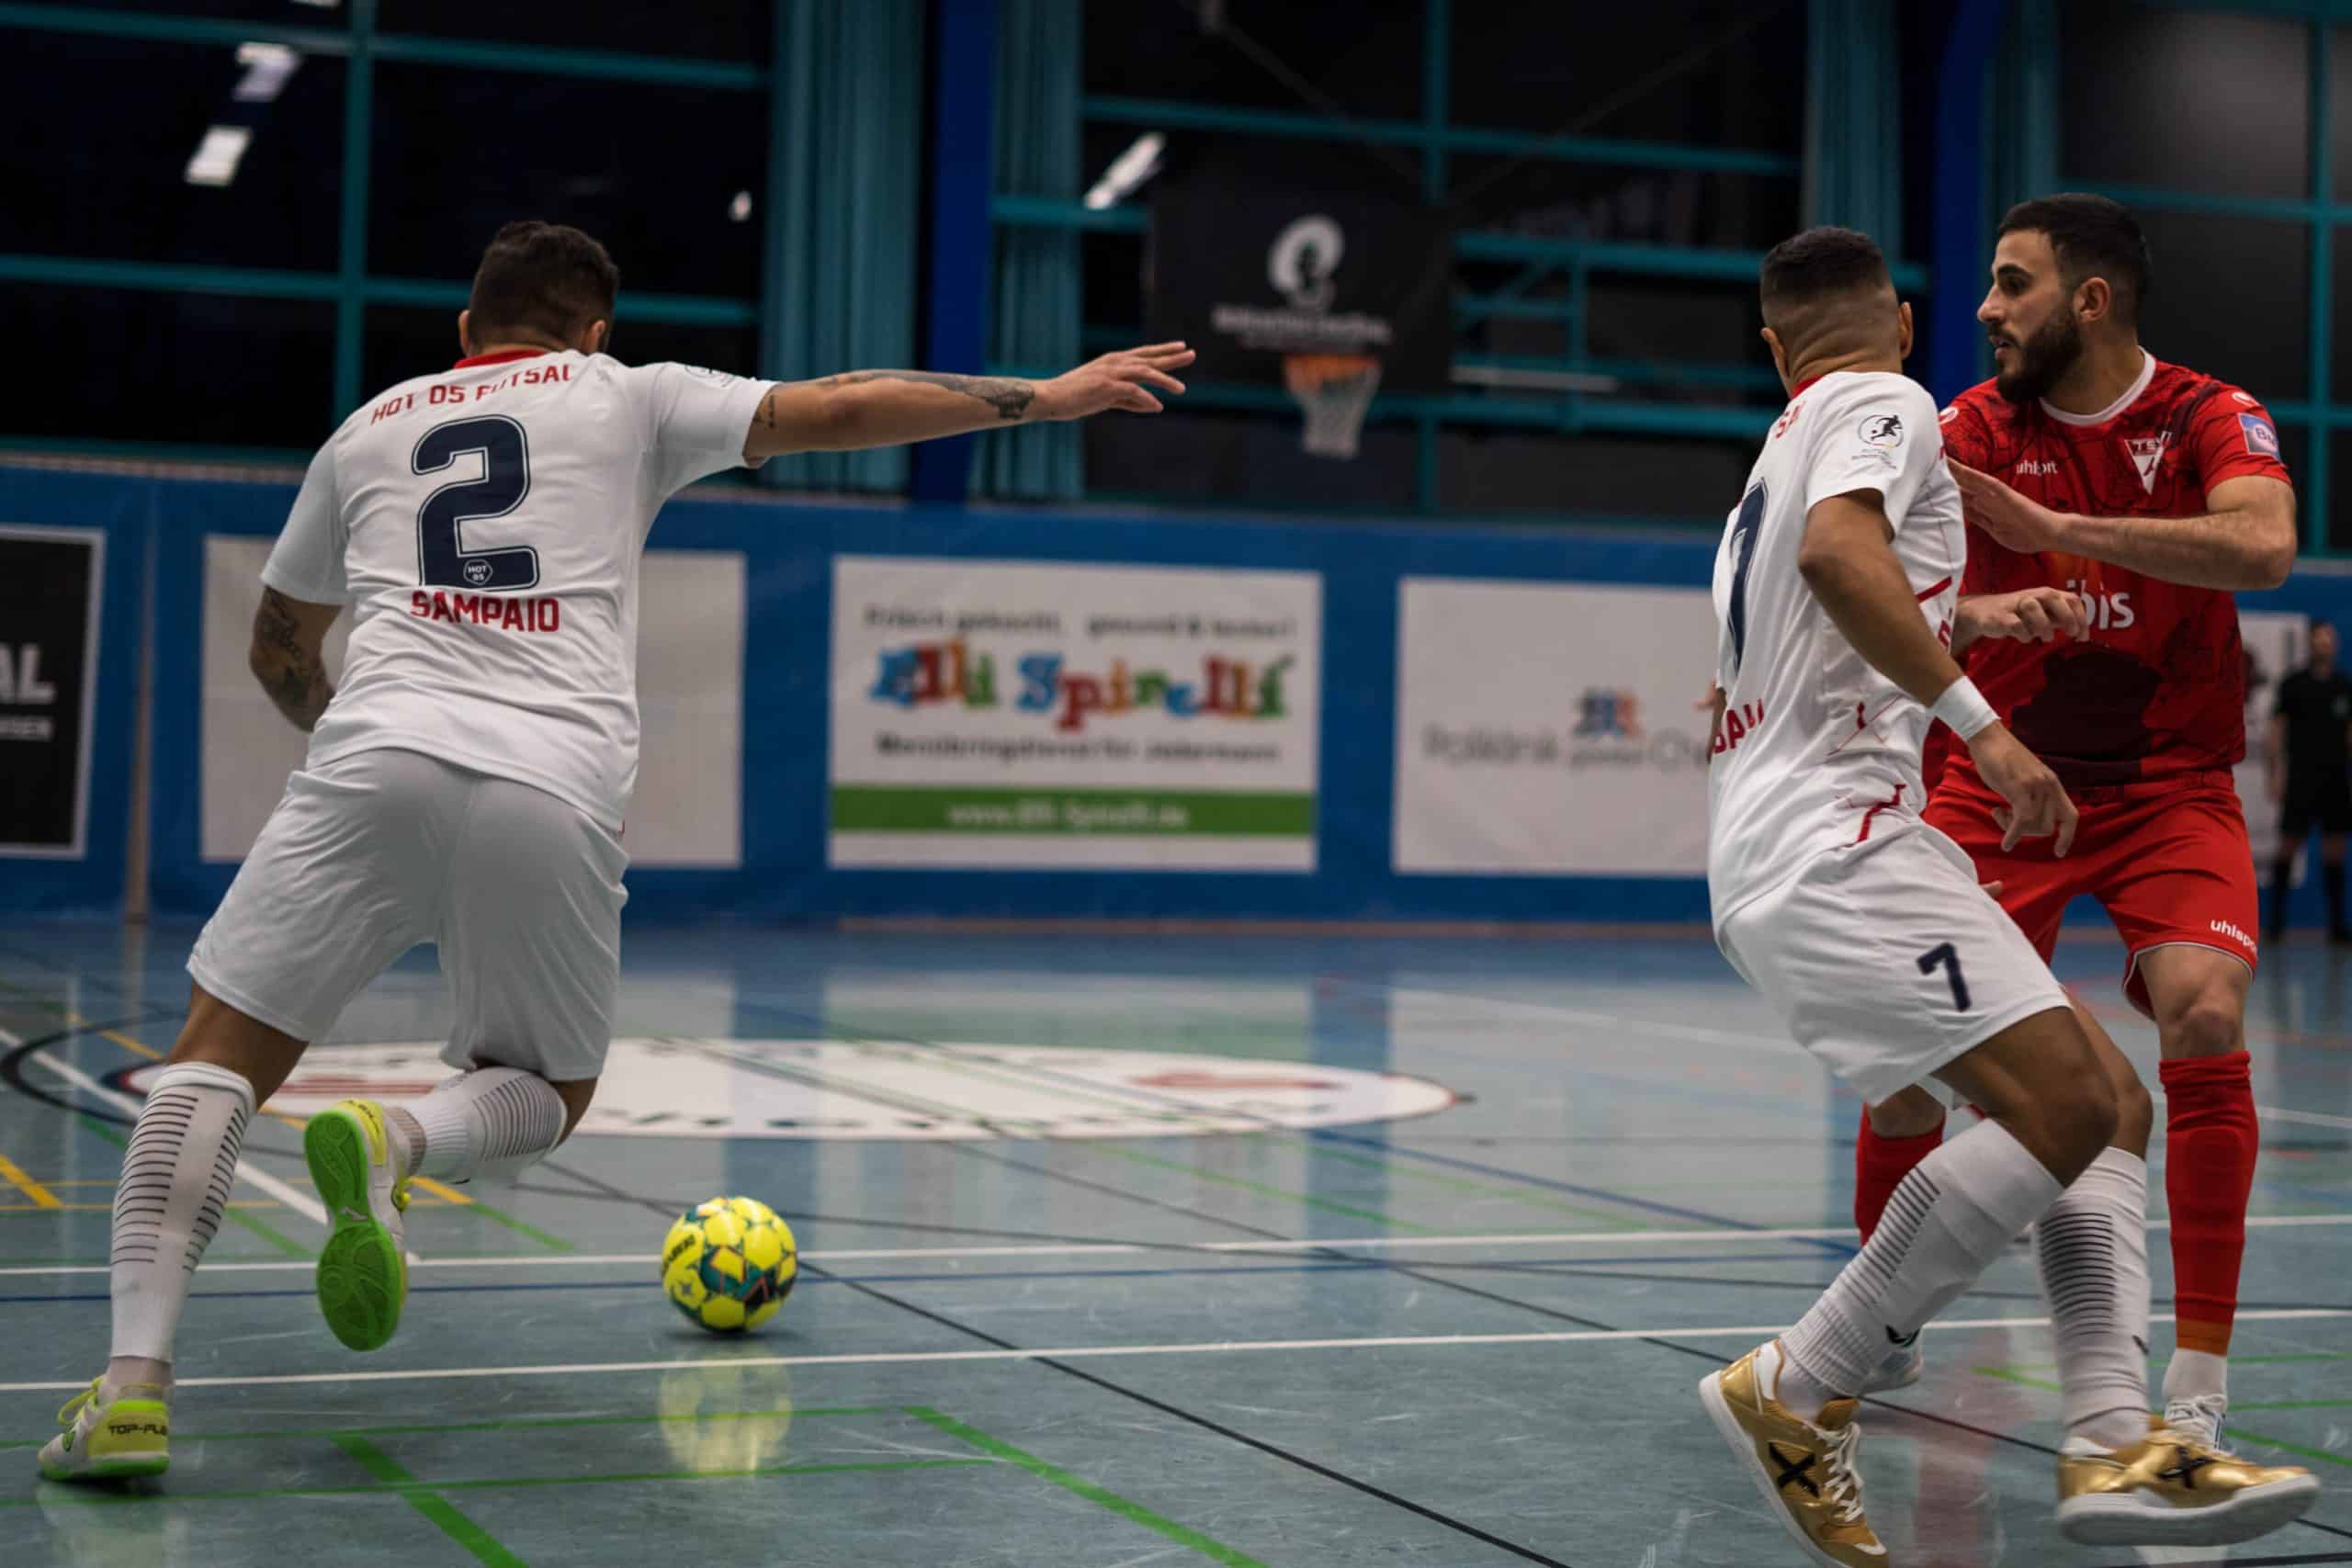 DSC04275 1 scaled - Die Futsal-Bundesliga geht in die Playoffs | Eine spannende Premierensaison im Überblick